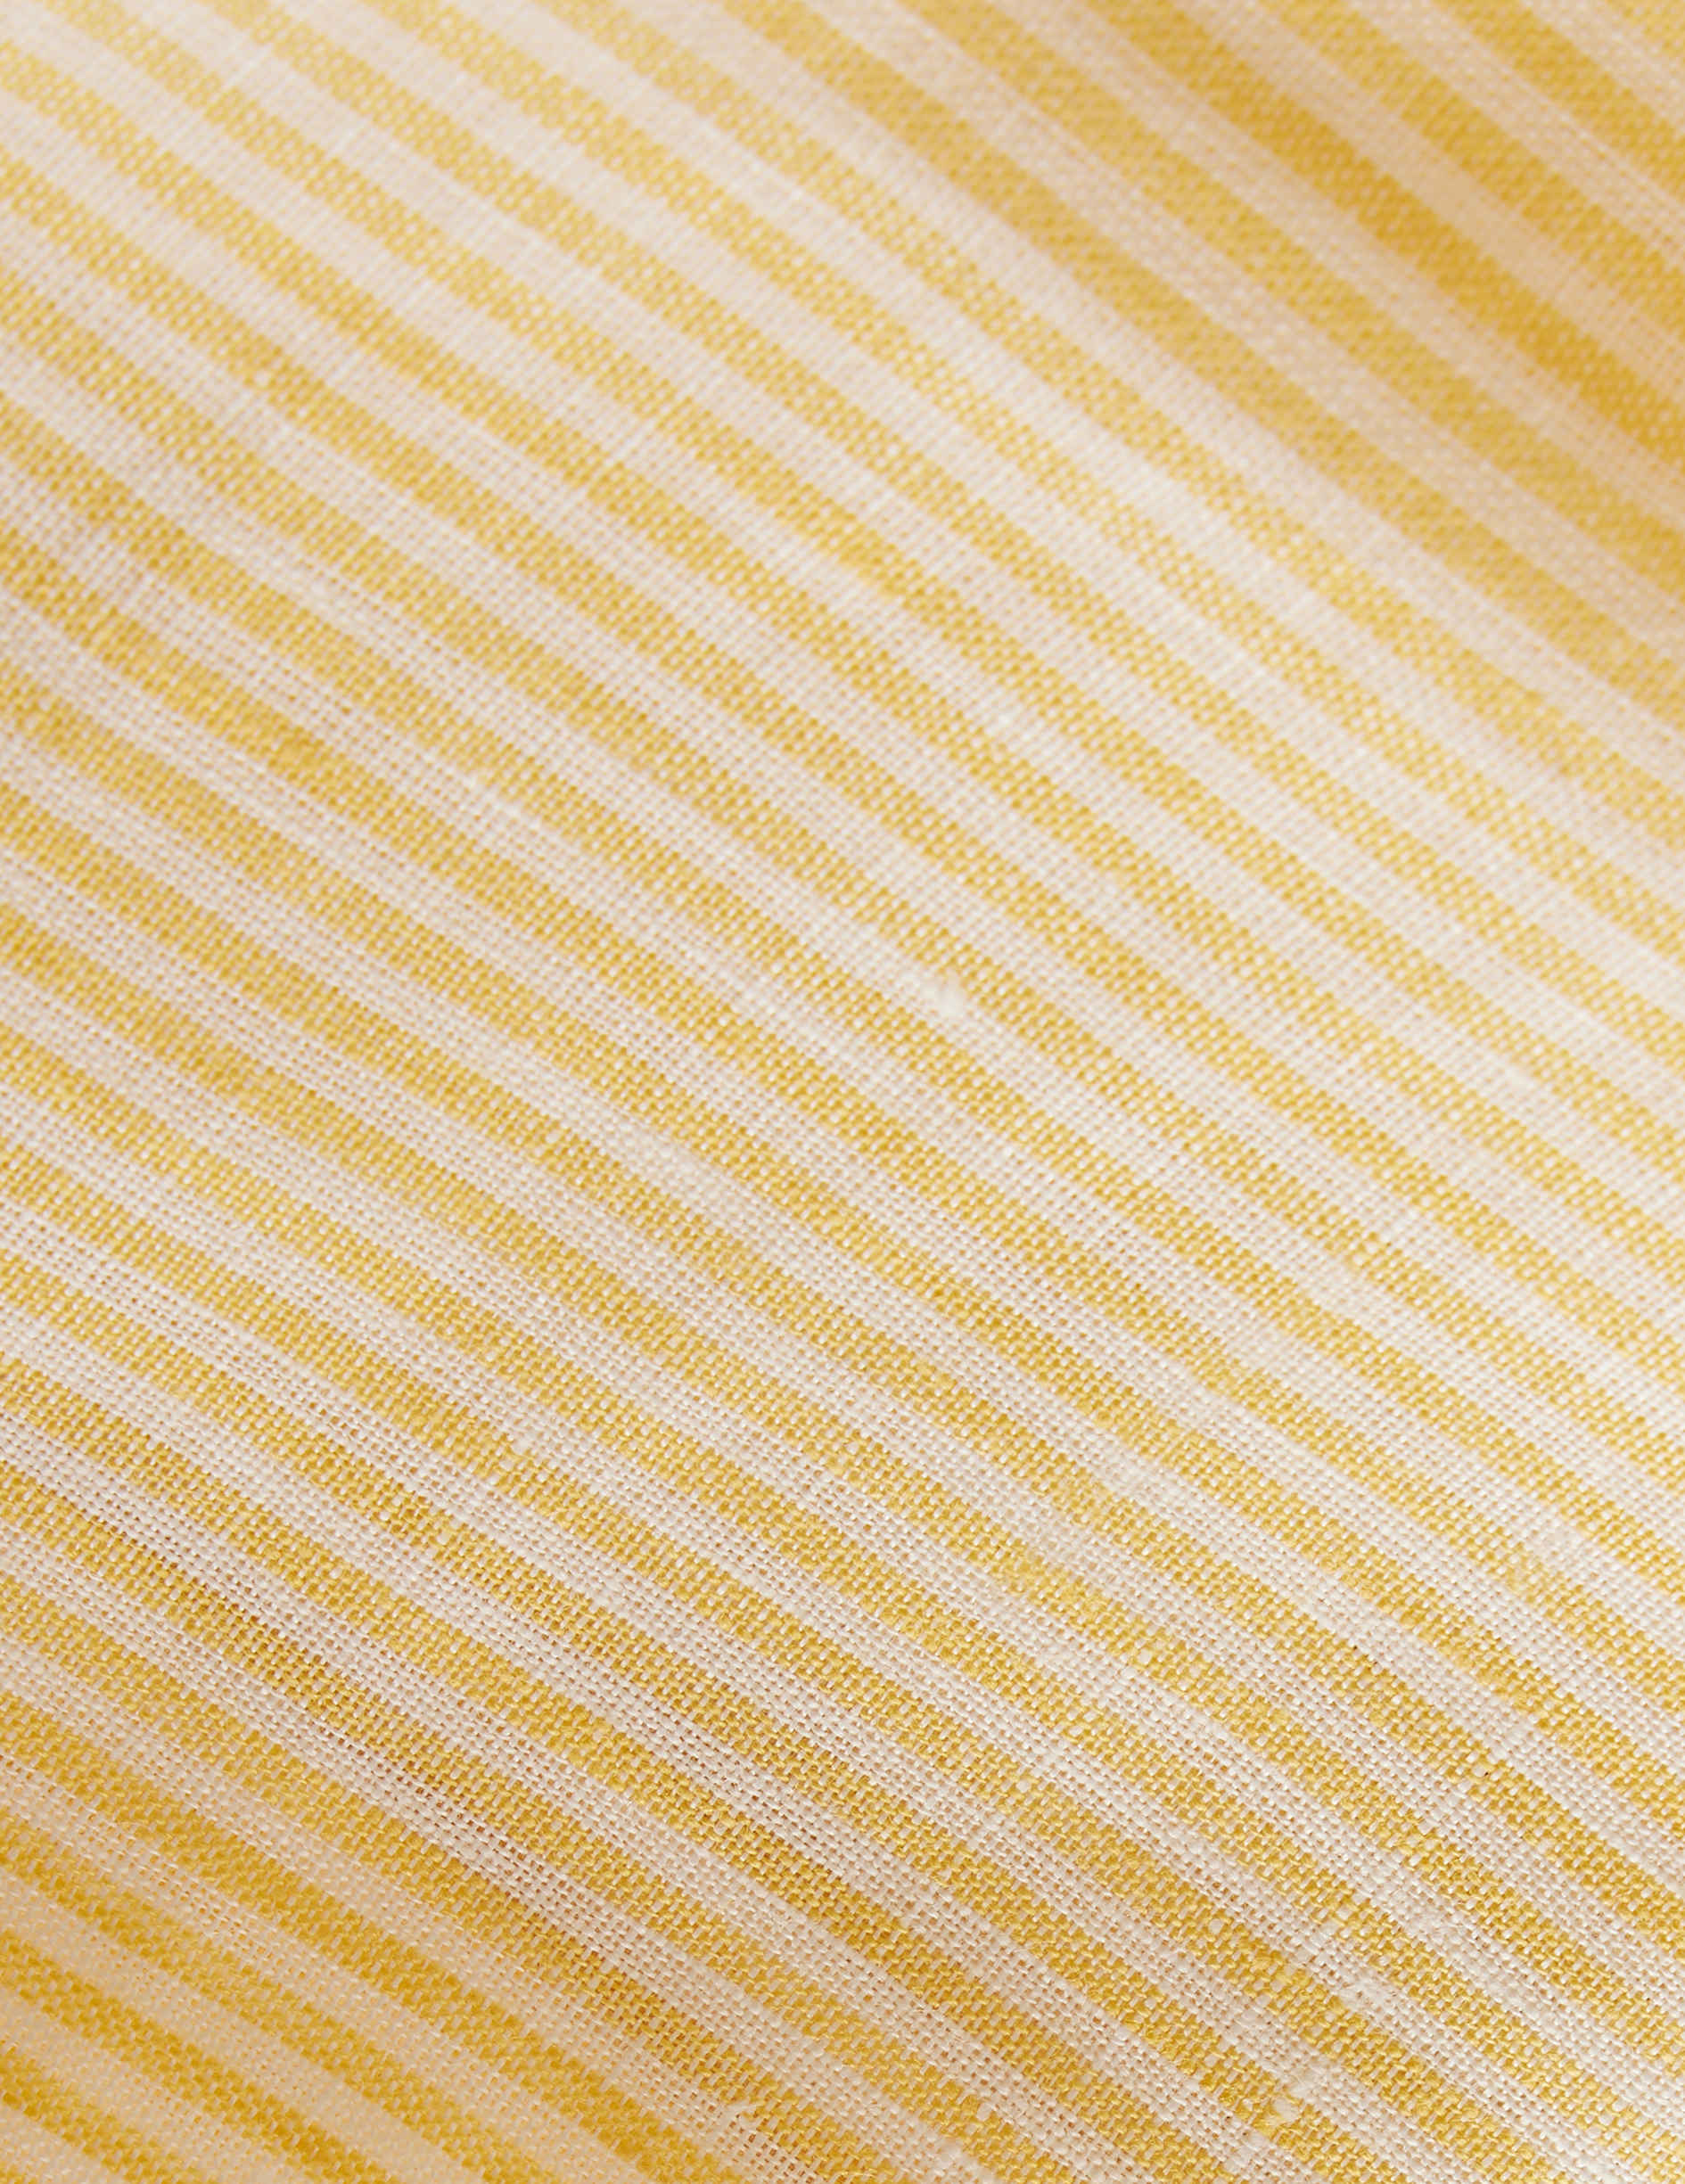 Yellow striped linen Carl shirt - Linen - Open Straight Collar